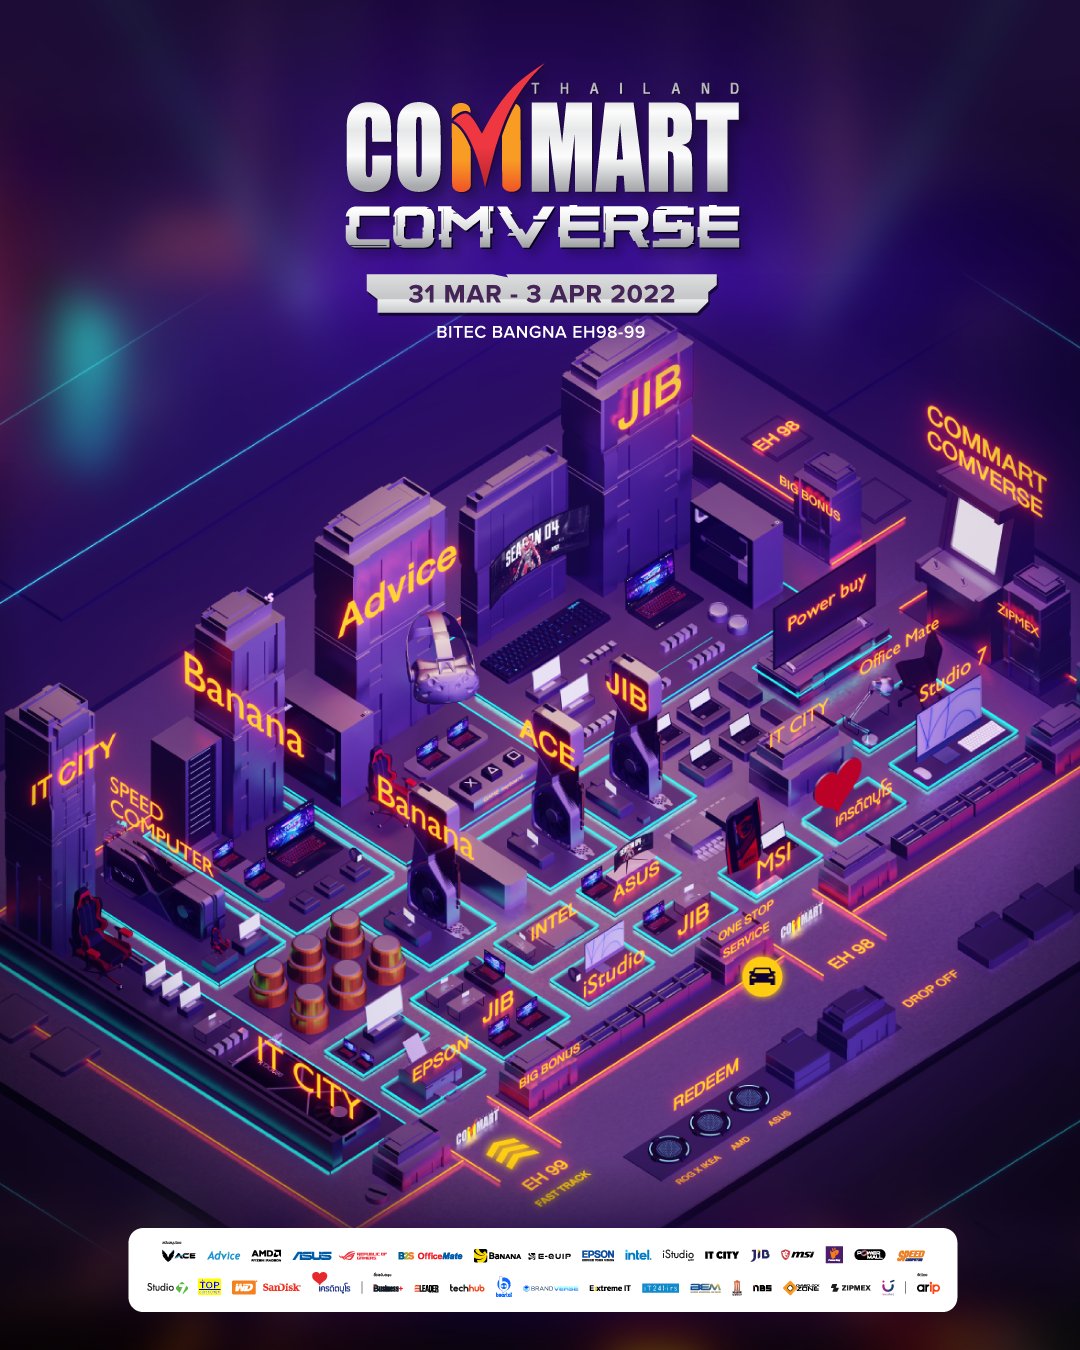 ชวนไปงาน COMMART COMVERSE 2022 อยากได้คอมใหม่ต้องไปคอมมาร์ต!